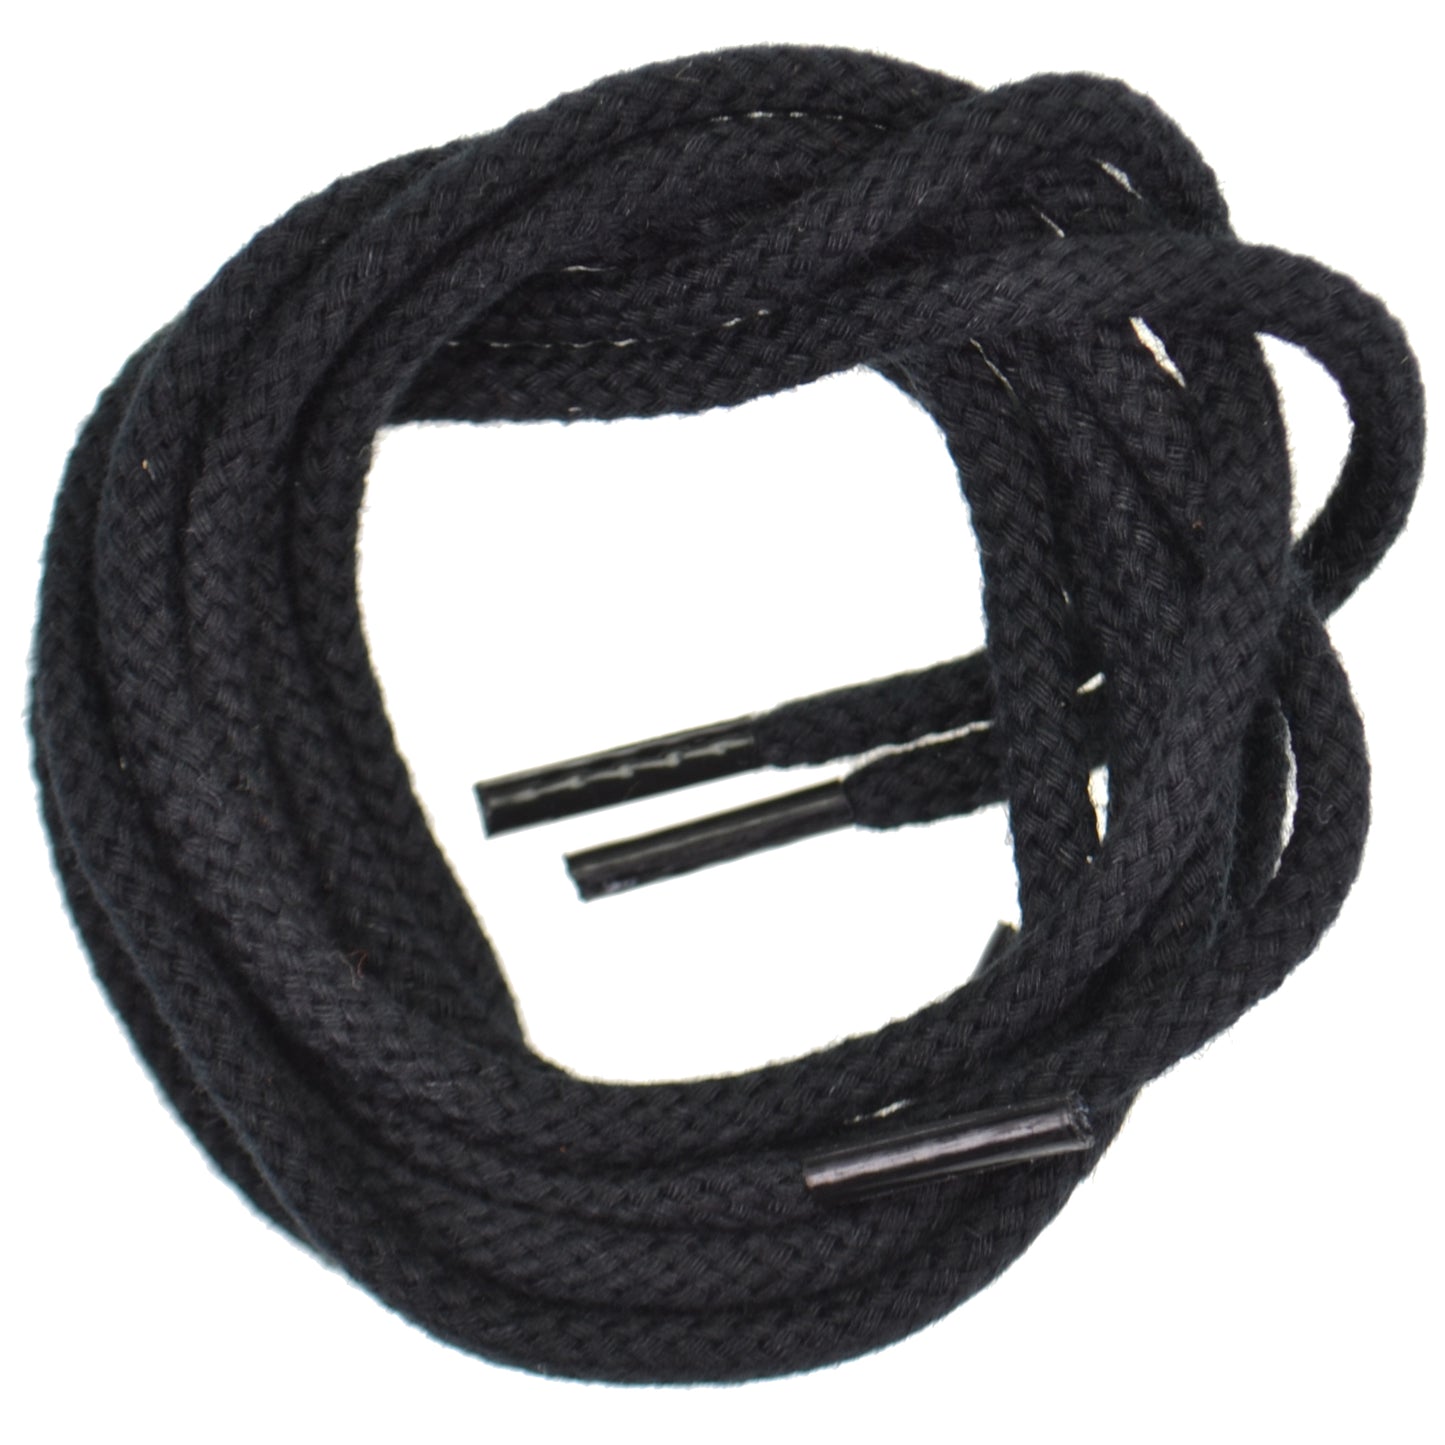 75cm Cord Shoe Laces - Black 4mm